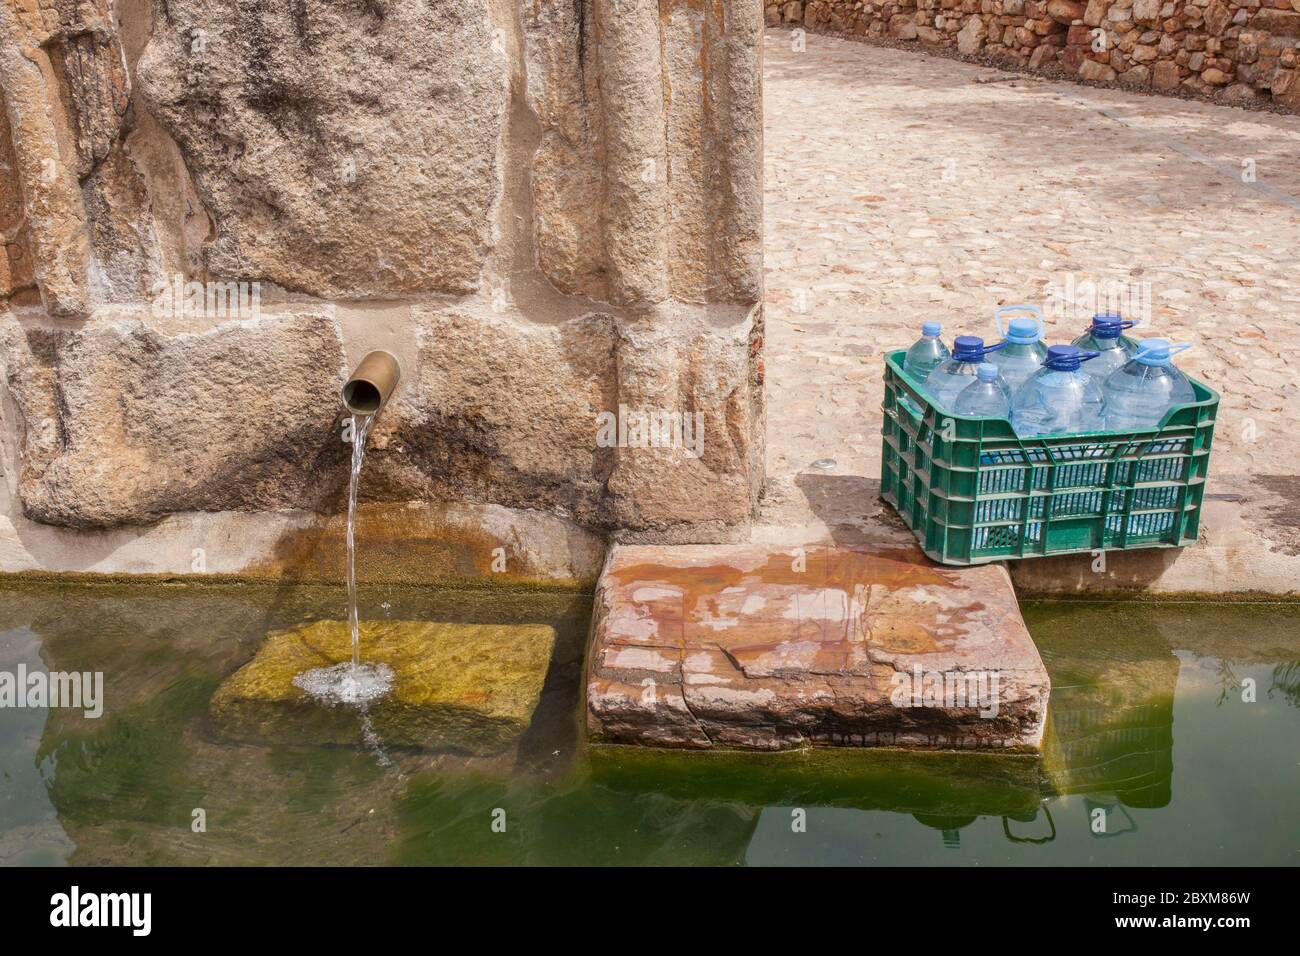 Scatola piena di bottiglie pronte per essere riempite alla fontana del Palomas Pillar, Hornachos, Spagna. Stemma imperiale di Carlos V scolpito al centro Foto Stock